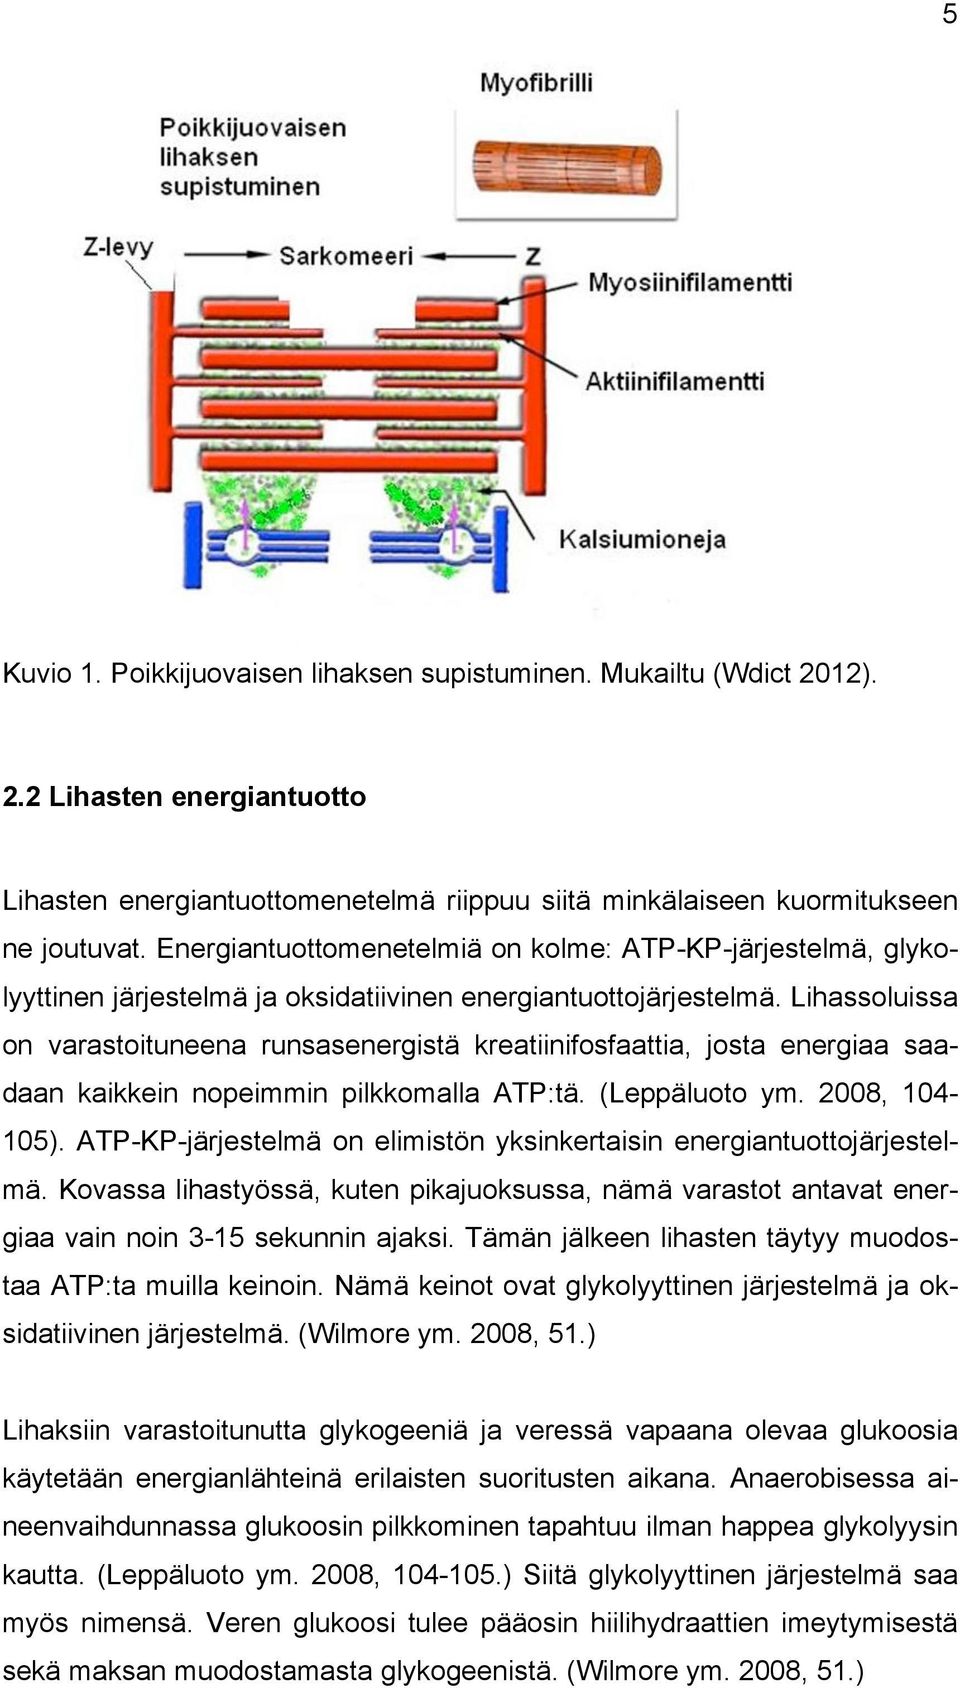 Lihassoluissa on varastoituneena runsasenergistä kreatiinifosfaattia, josta energiaa saadaan kaikkein nopeimmin pilkkomalla ATP:tä. (Leppäluoto ym. 2008, 104-105).